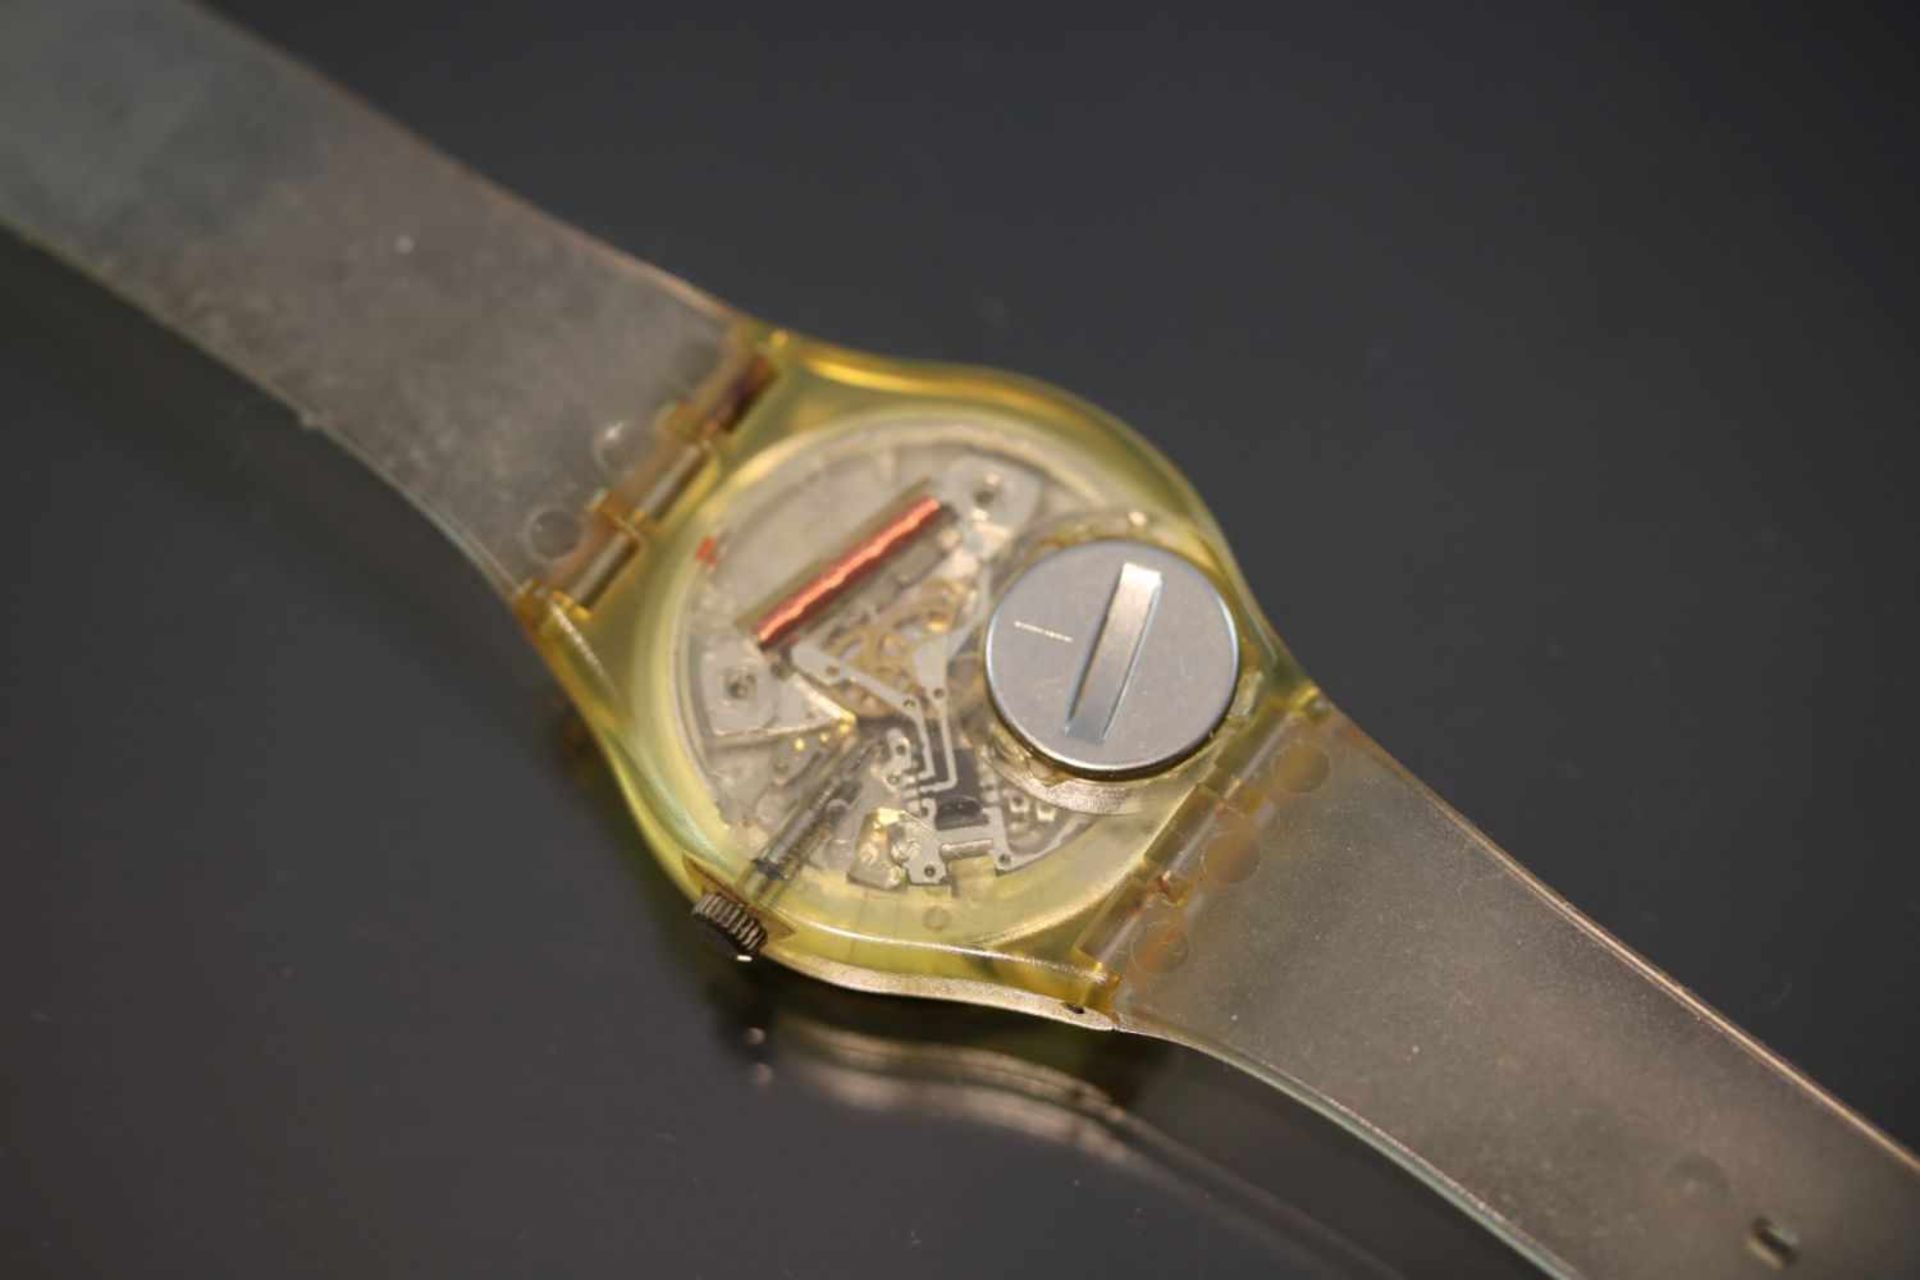 Swatch & Art-Uhr Quartz-Werk Silikon-Band Gehäusedurchmesser: 34 mm- - -25.00 % buyer's premium on - Bild 2 aus 2